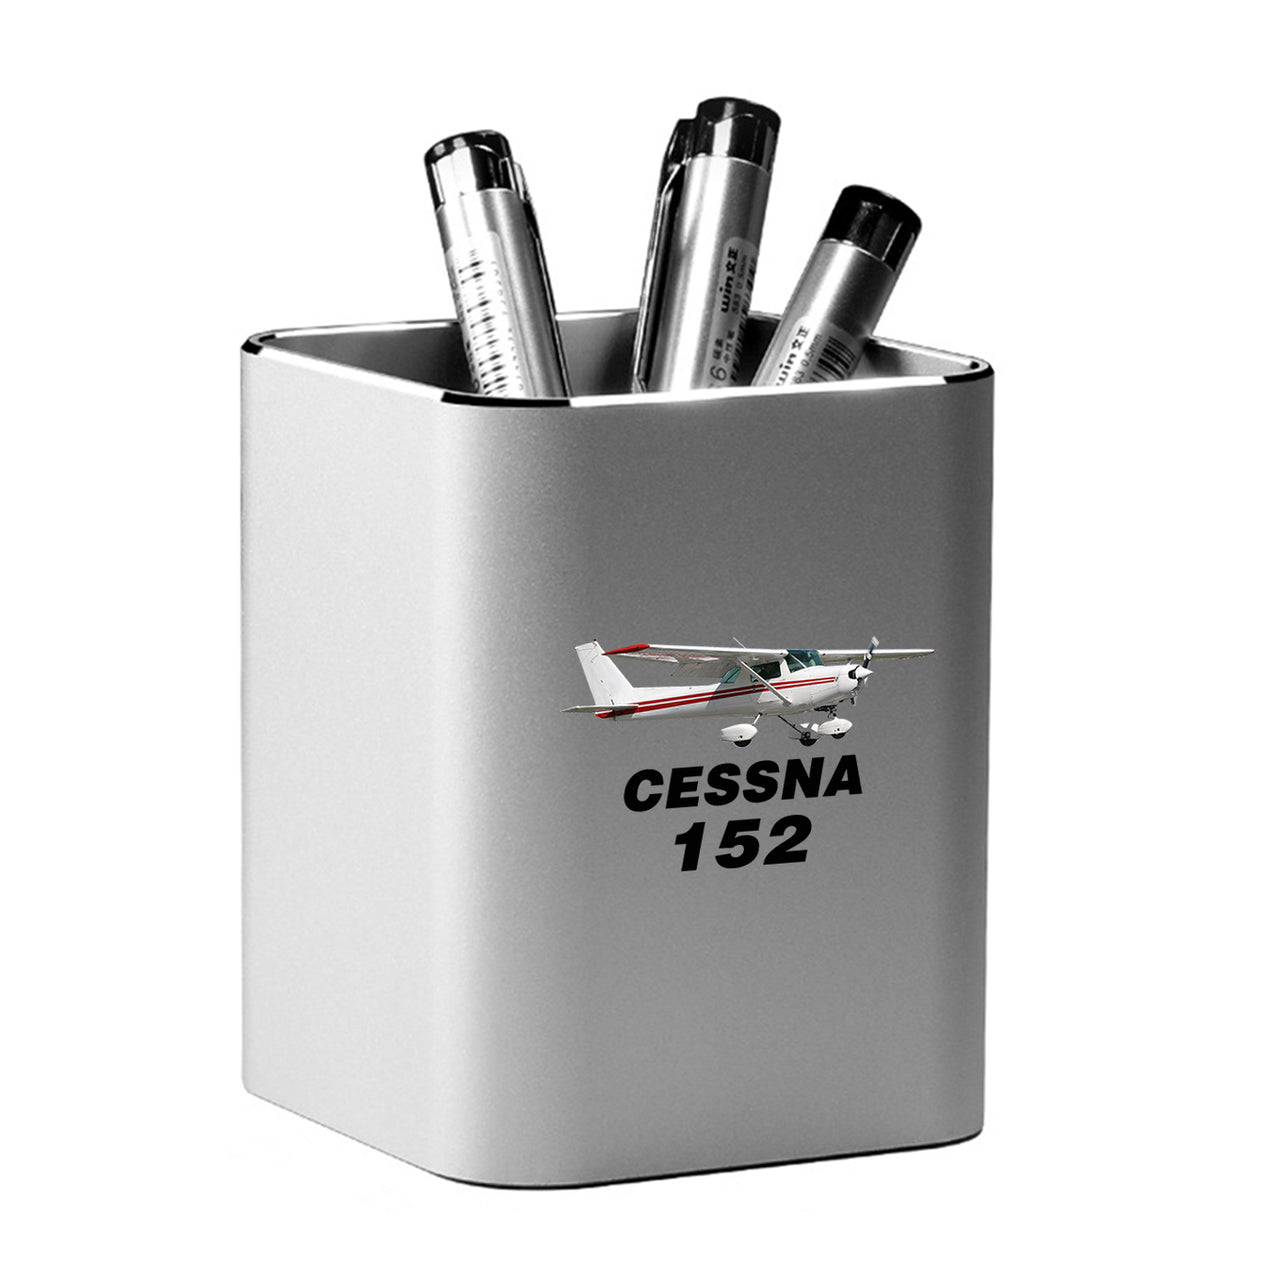 The Cessna 152 Designed Aluminium Alloy Pen Holders